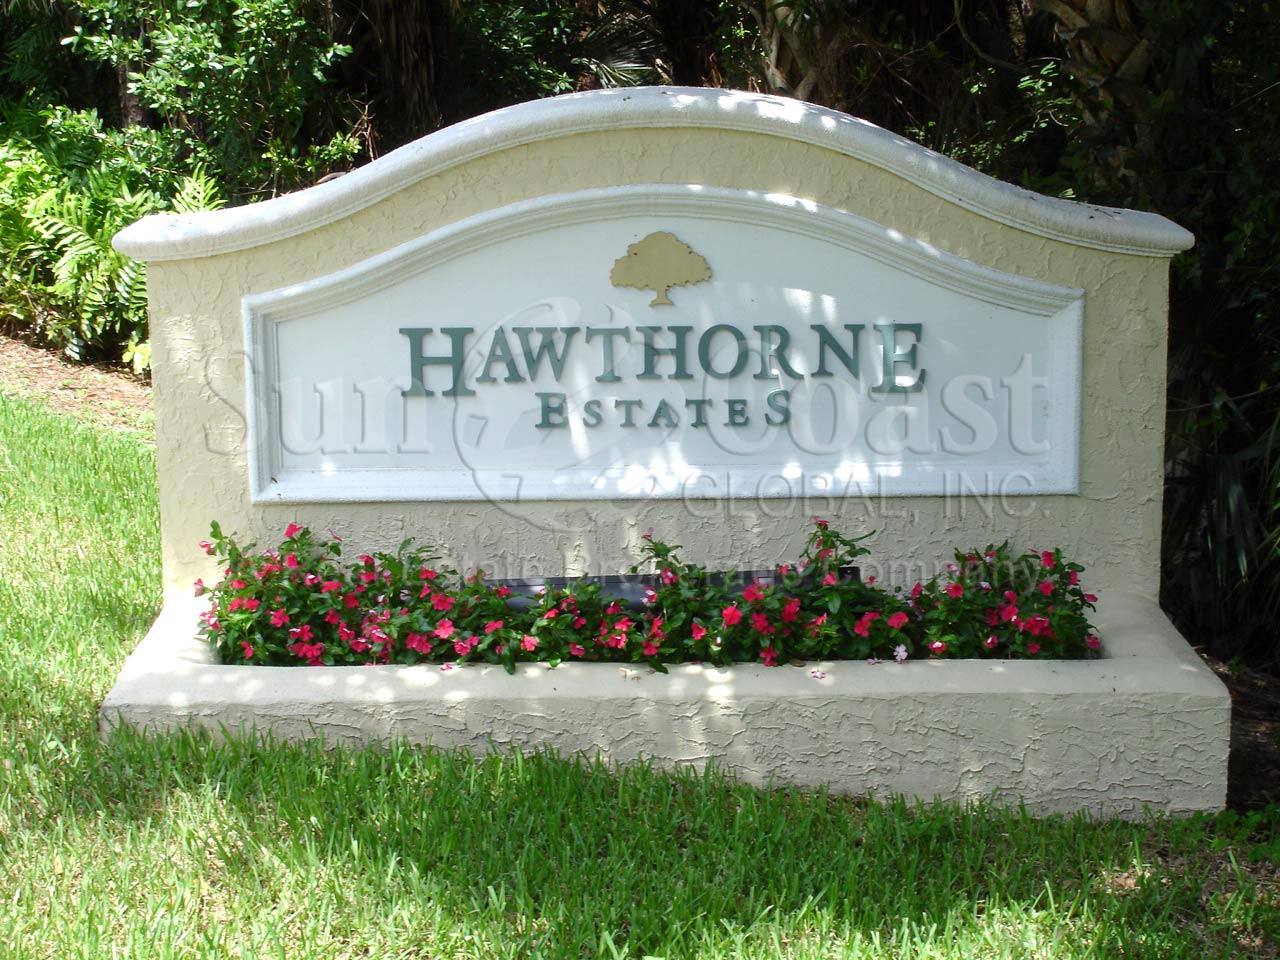 Hawthorne Estates Signage